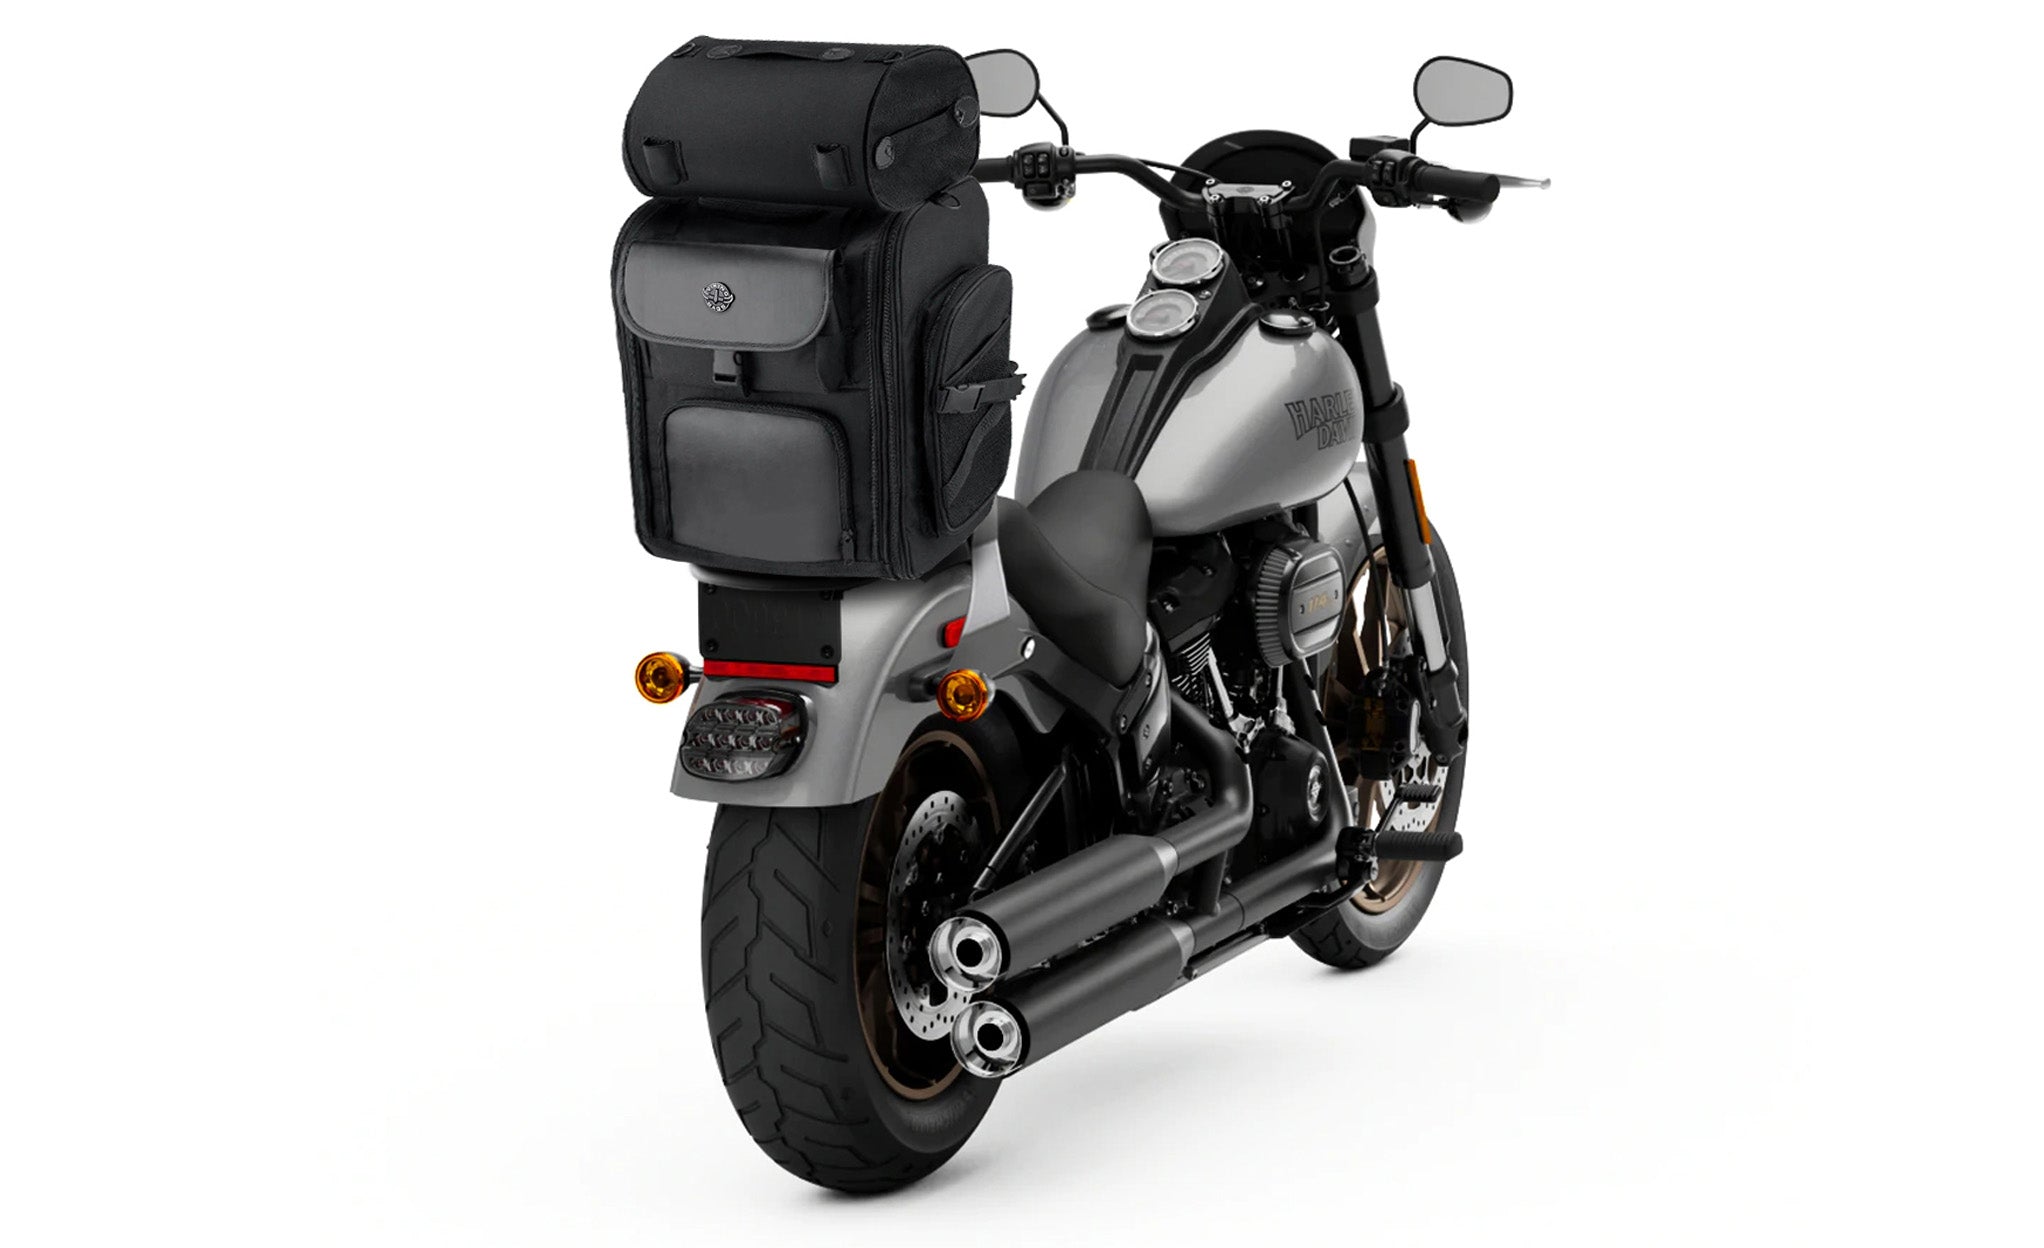 Viking Dwarf Medium Suzuki Motorcycle Tail Bag Bag on Bike View @expand